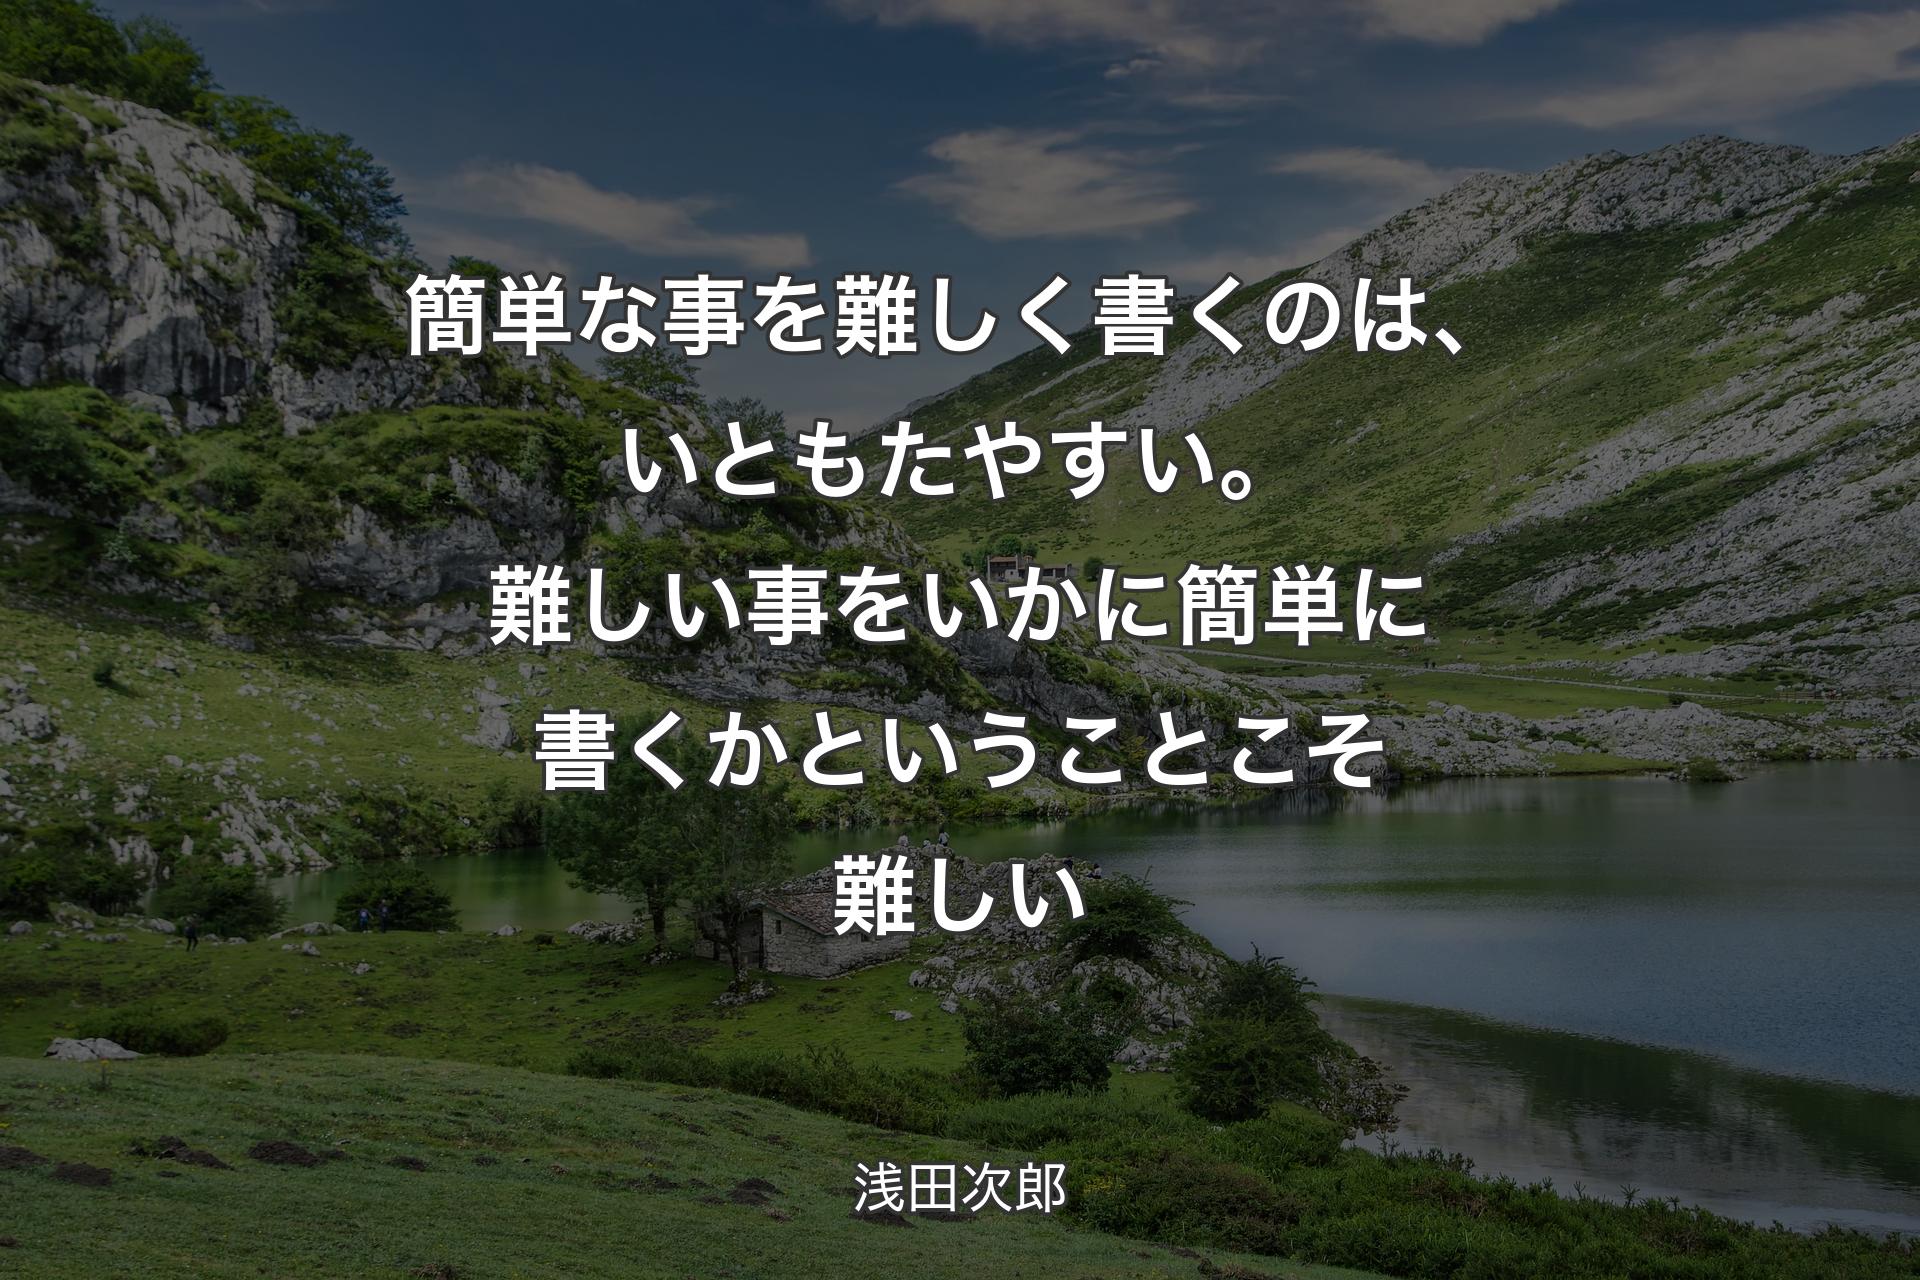 【背景1】簡単な事を難しく書くのは、いともたやすい。難しい事をいかに簡単に書くかということこそ難しい - 浅田次郎